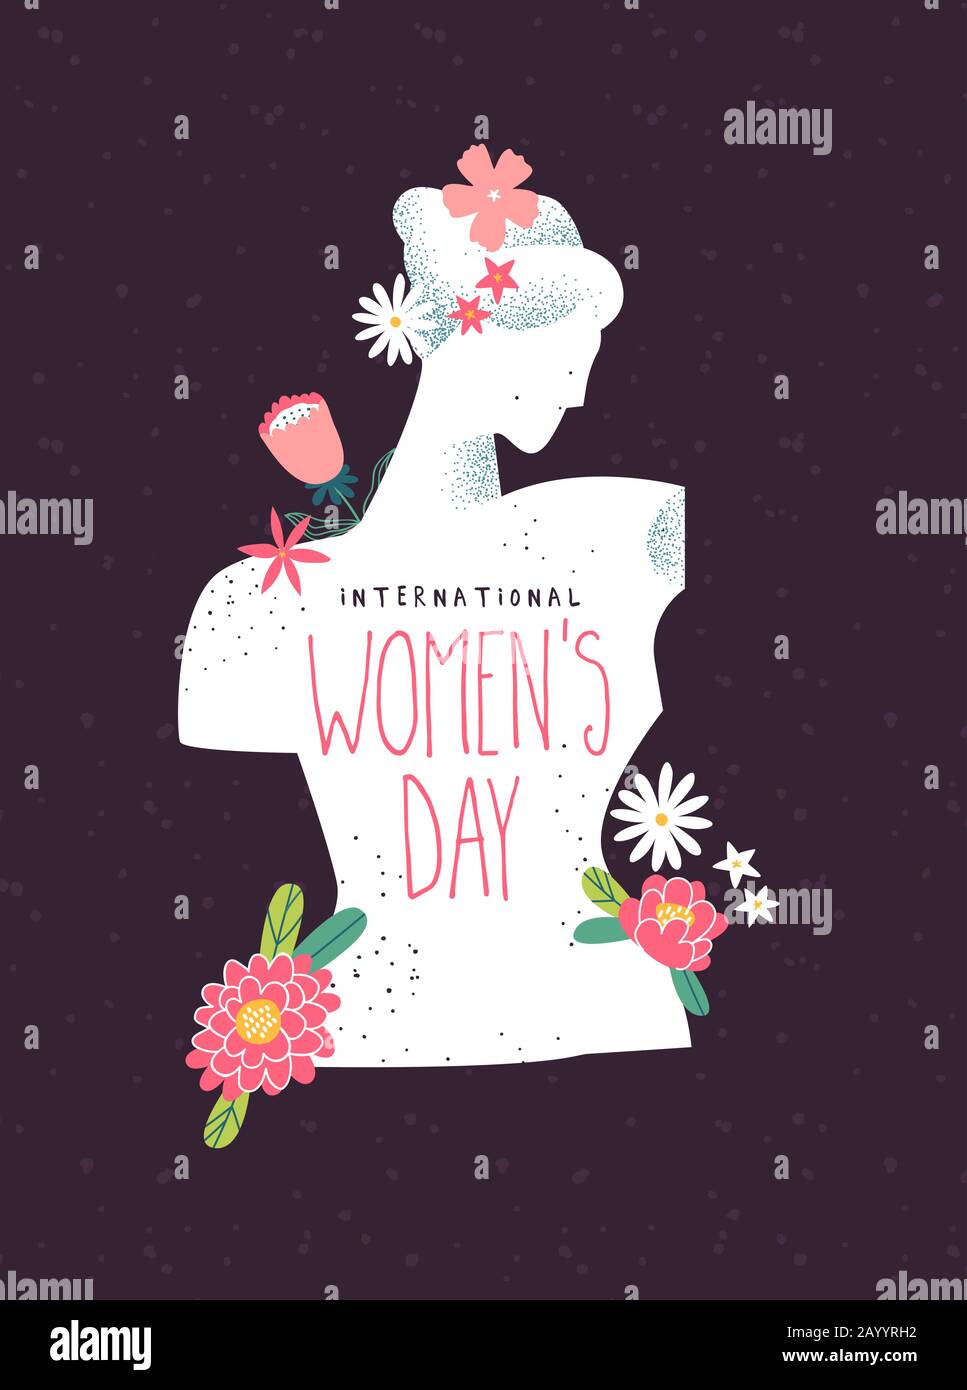 Internationale Grußkarte Für Den Frauentag mit weiblicher Silhouette mit rosa Frühlingsblumen. Frauenrechte feiern Blumenmuster in handgezeichneter Form Stock Vektor